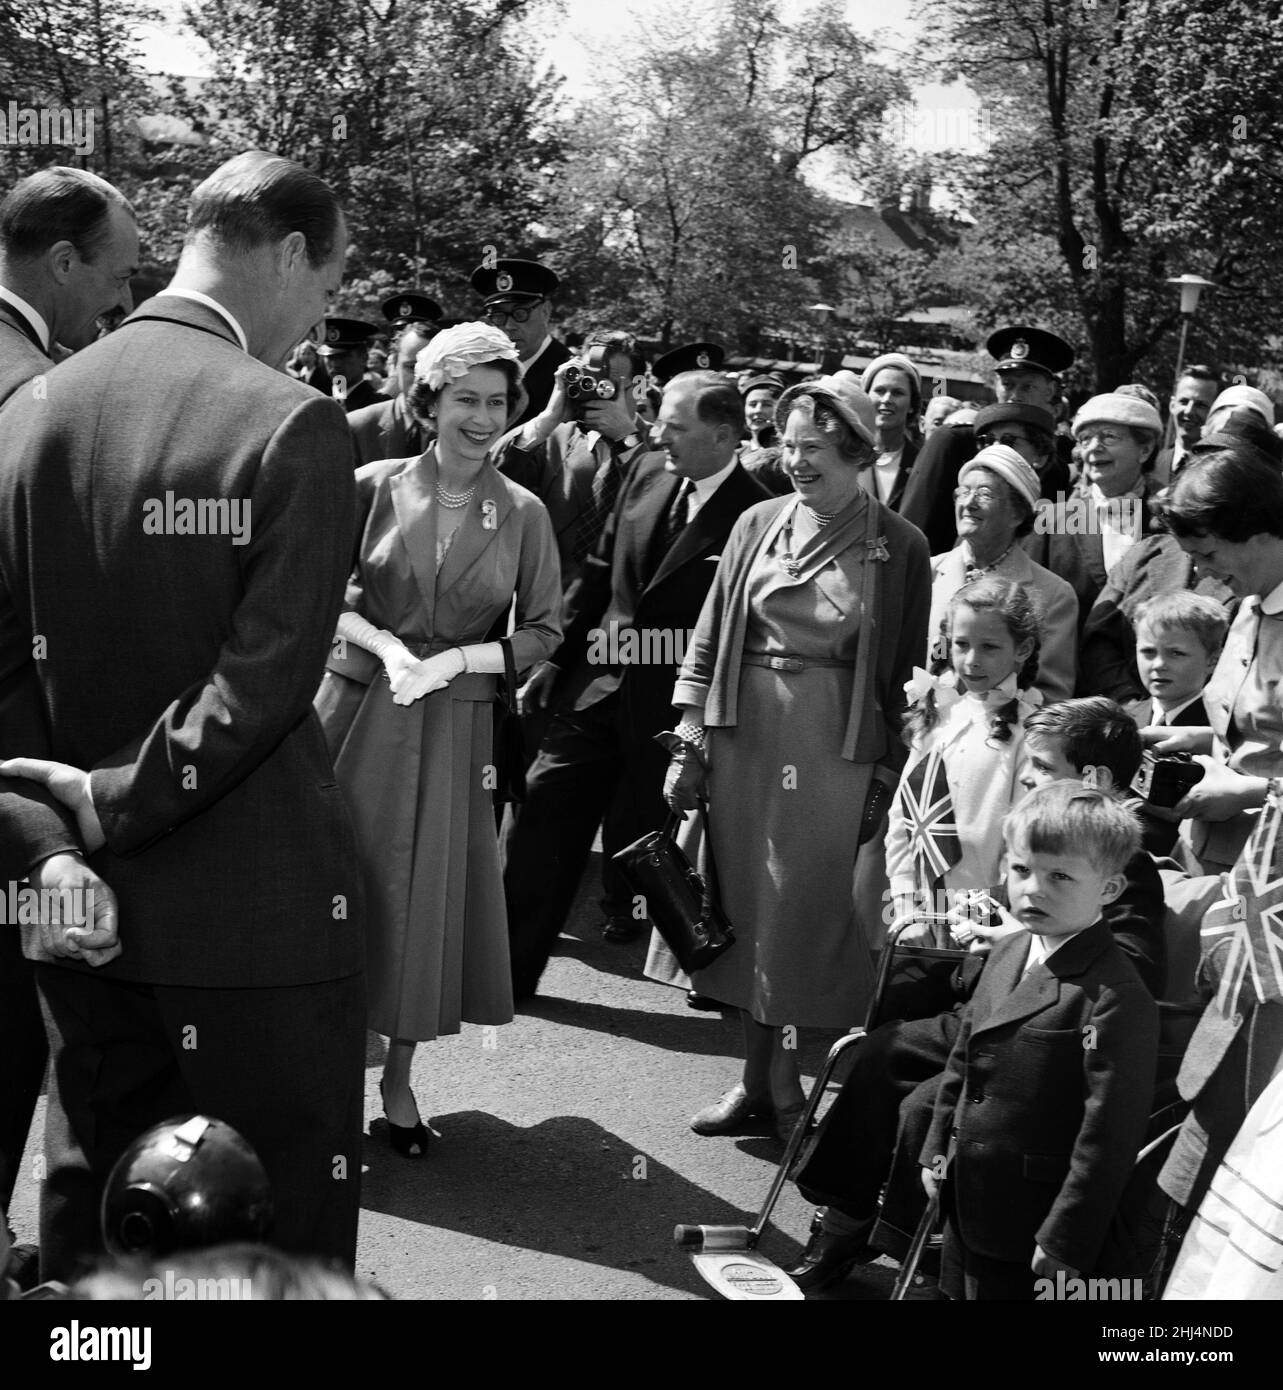 Königin Elizabeth II. Und Prinz Philip, Herzog von Edinburgh, besuchen Dänemark. Königin Elizabeth besucht die Englische Kirche von St. Alban's in Kopenhagen. 23rd Mai 1957. Stockfoto